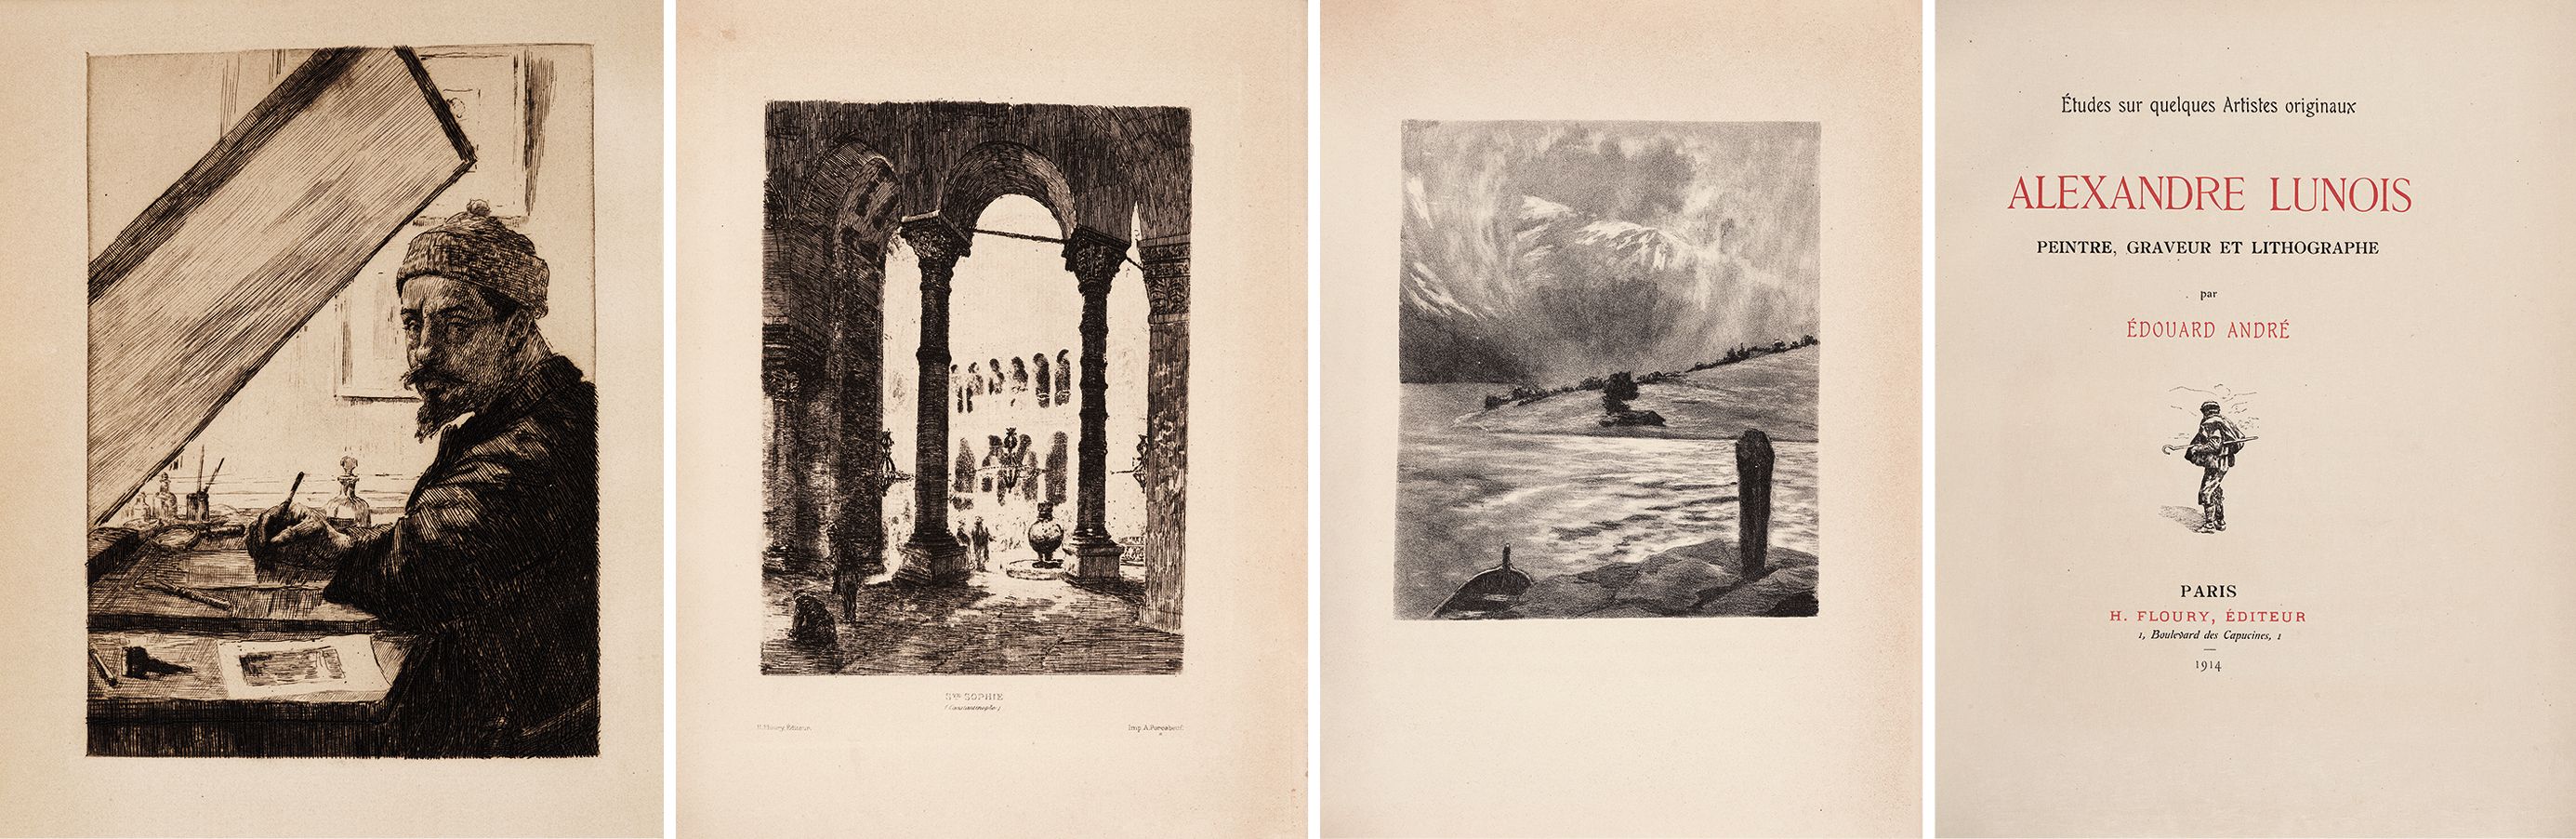 亚历山大·卢努瓦版画集 1914年巴黎 H. Floury 出版